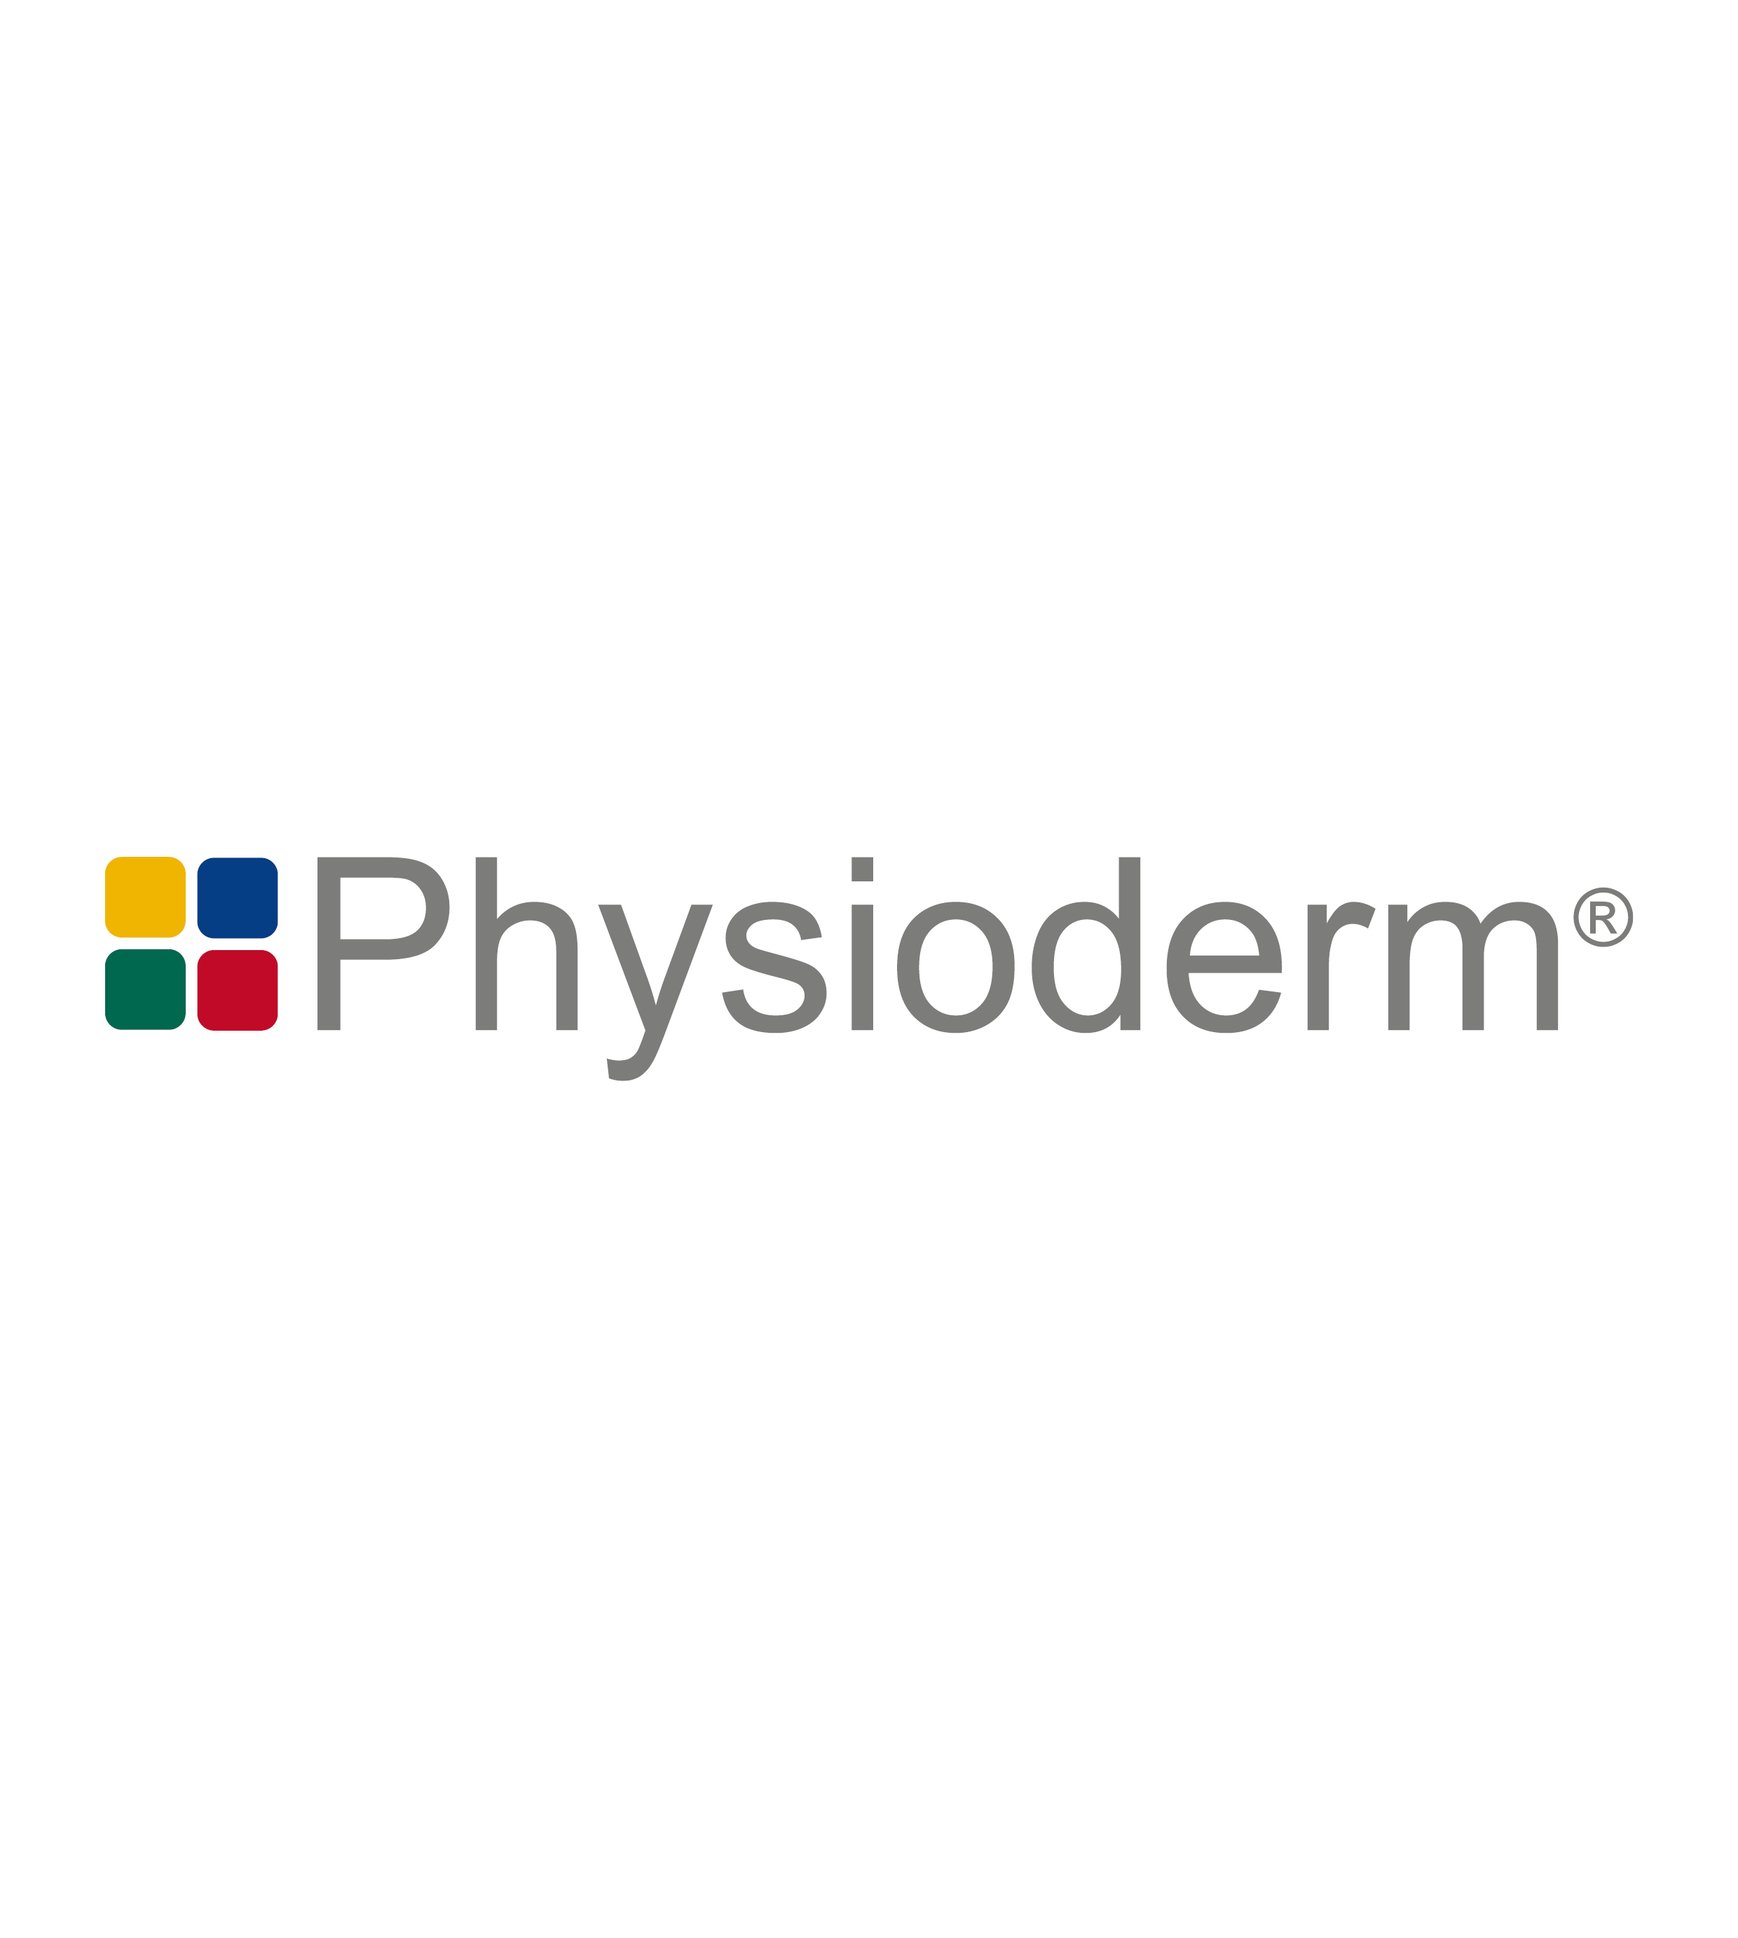 Physioderm